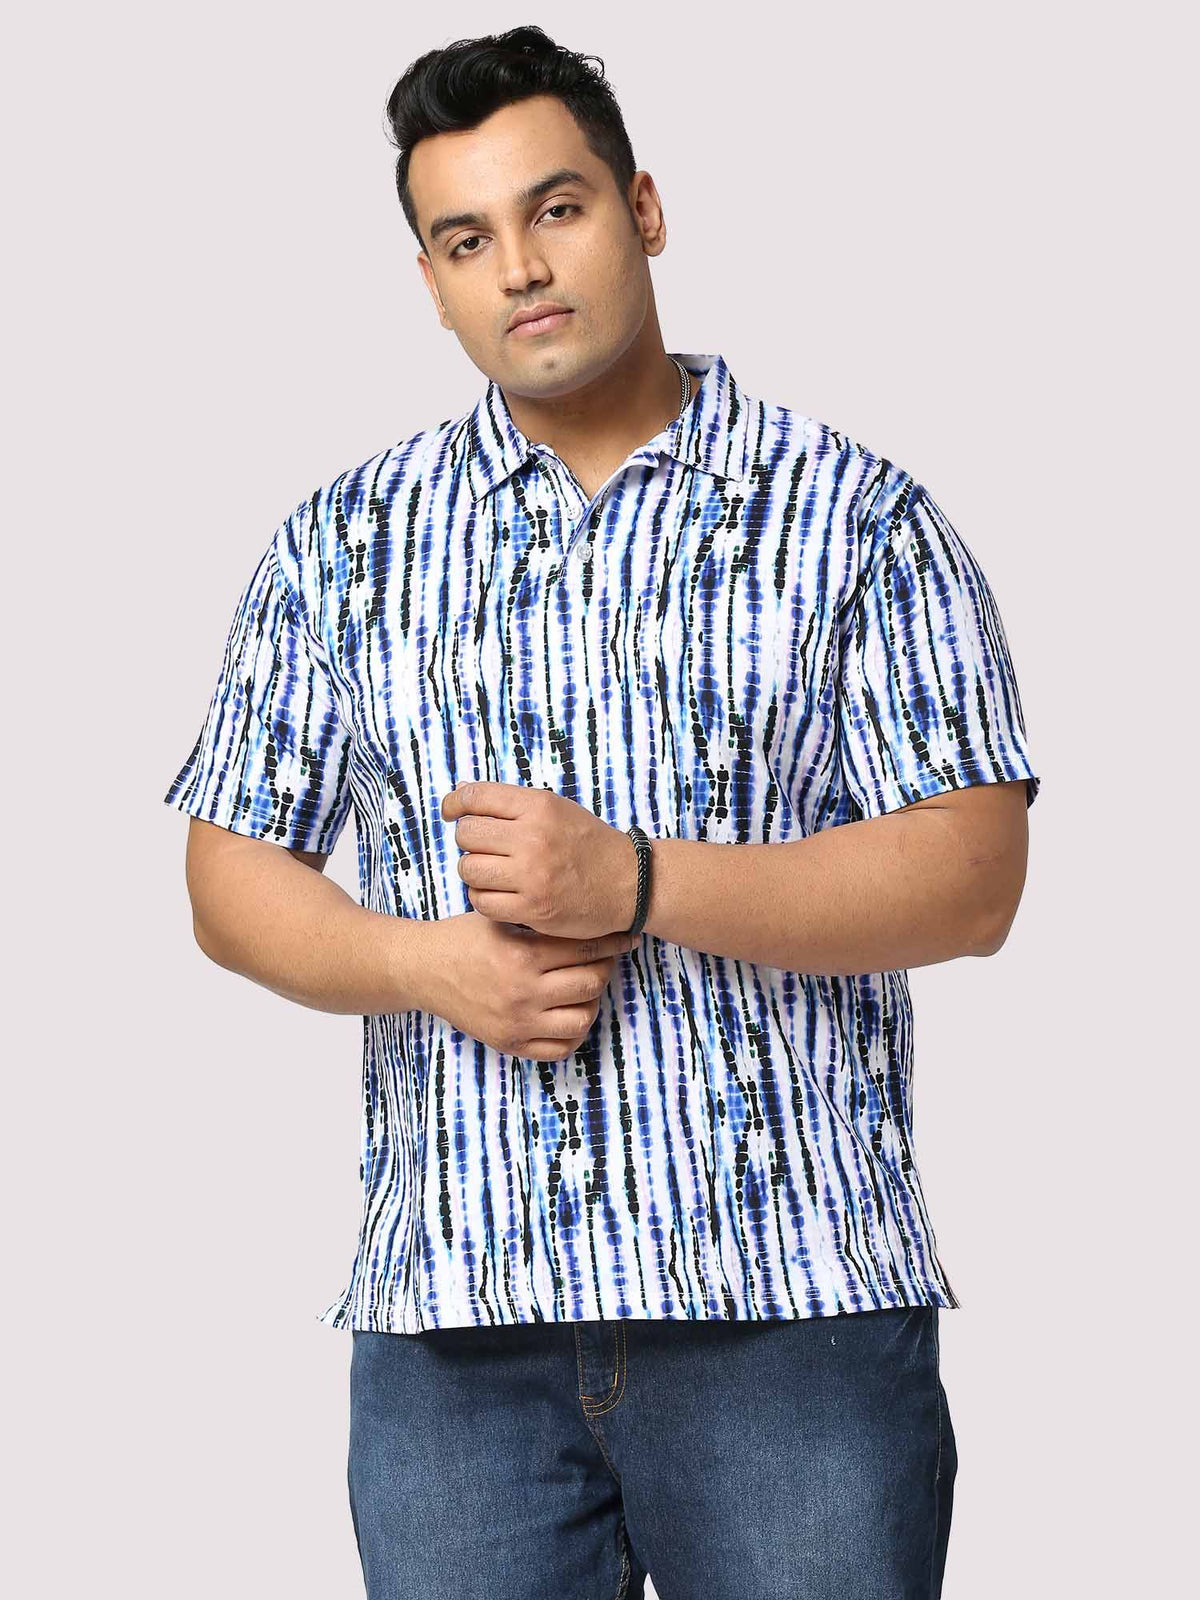 Waves Half Sleeves Digital Printed Shirt Men's Plus Size - Guniaa Fashions